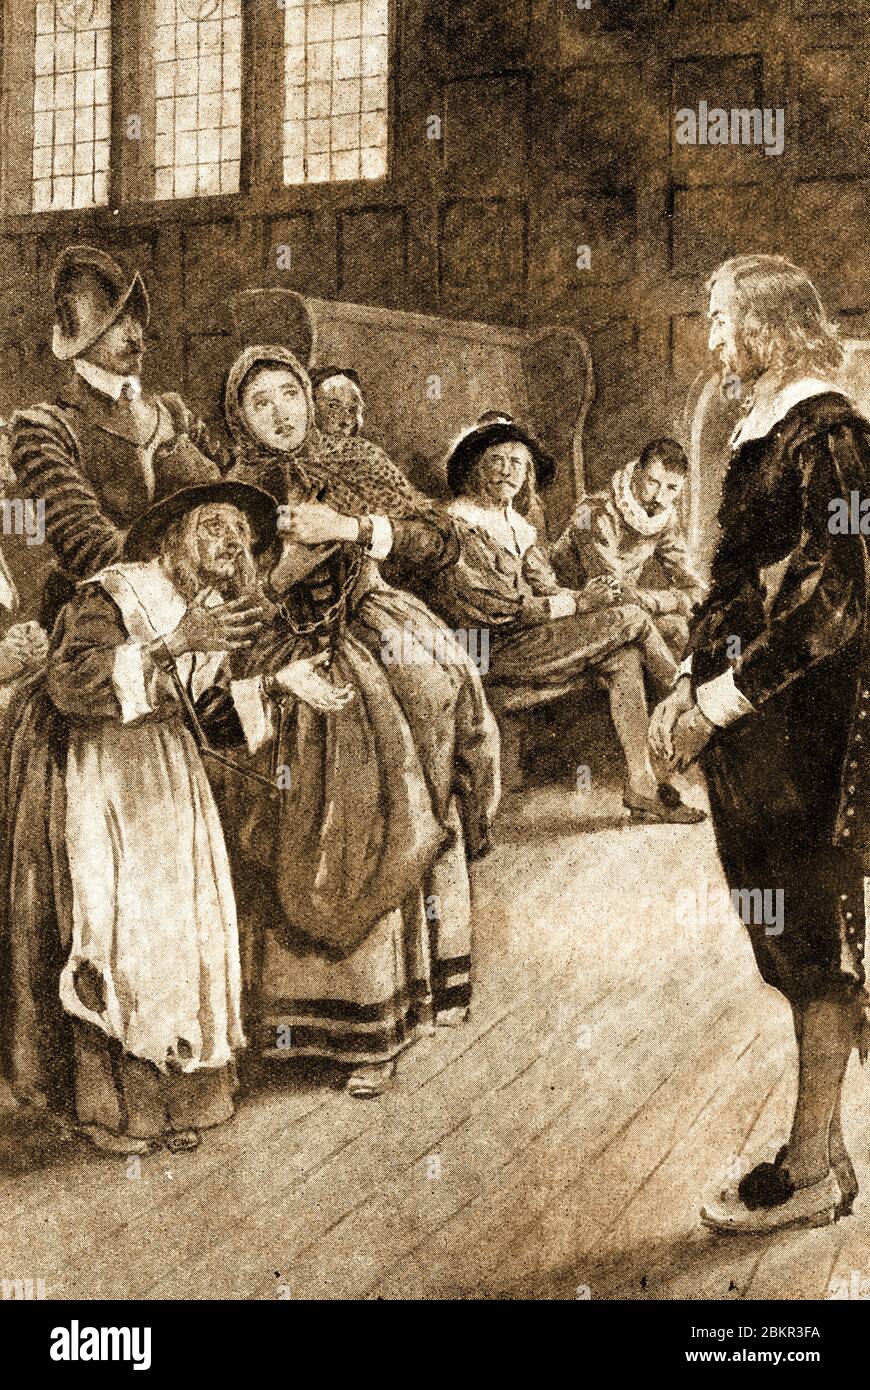 William Harvey (1578 – 1657) war ein englischer Arzt mit Schwerpunkt Anatomie und Physiologie. Er war der erste bekannte Arzt, der die systemische Blutzirkulation beschrieb und war weithin bekannt Skeptiker in Bezug auf den allgemeinen Glauben an Hexerei zu dieser Zeit. In dieser Szene findet er drei Angeklagte Hexen nicht schuldig bei einem Hexenprozess in Lancashire, in dem er den Vorsitz führte. (1920 Abbildung) Stockfoto